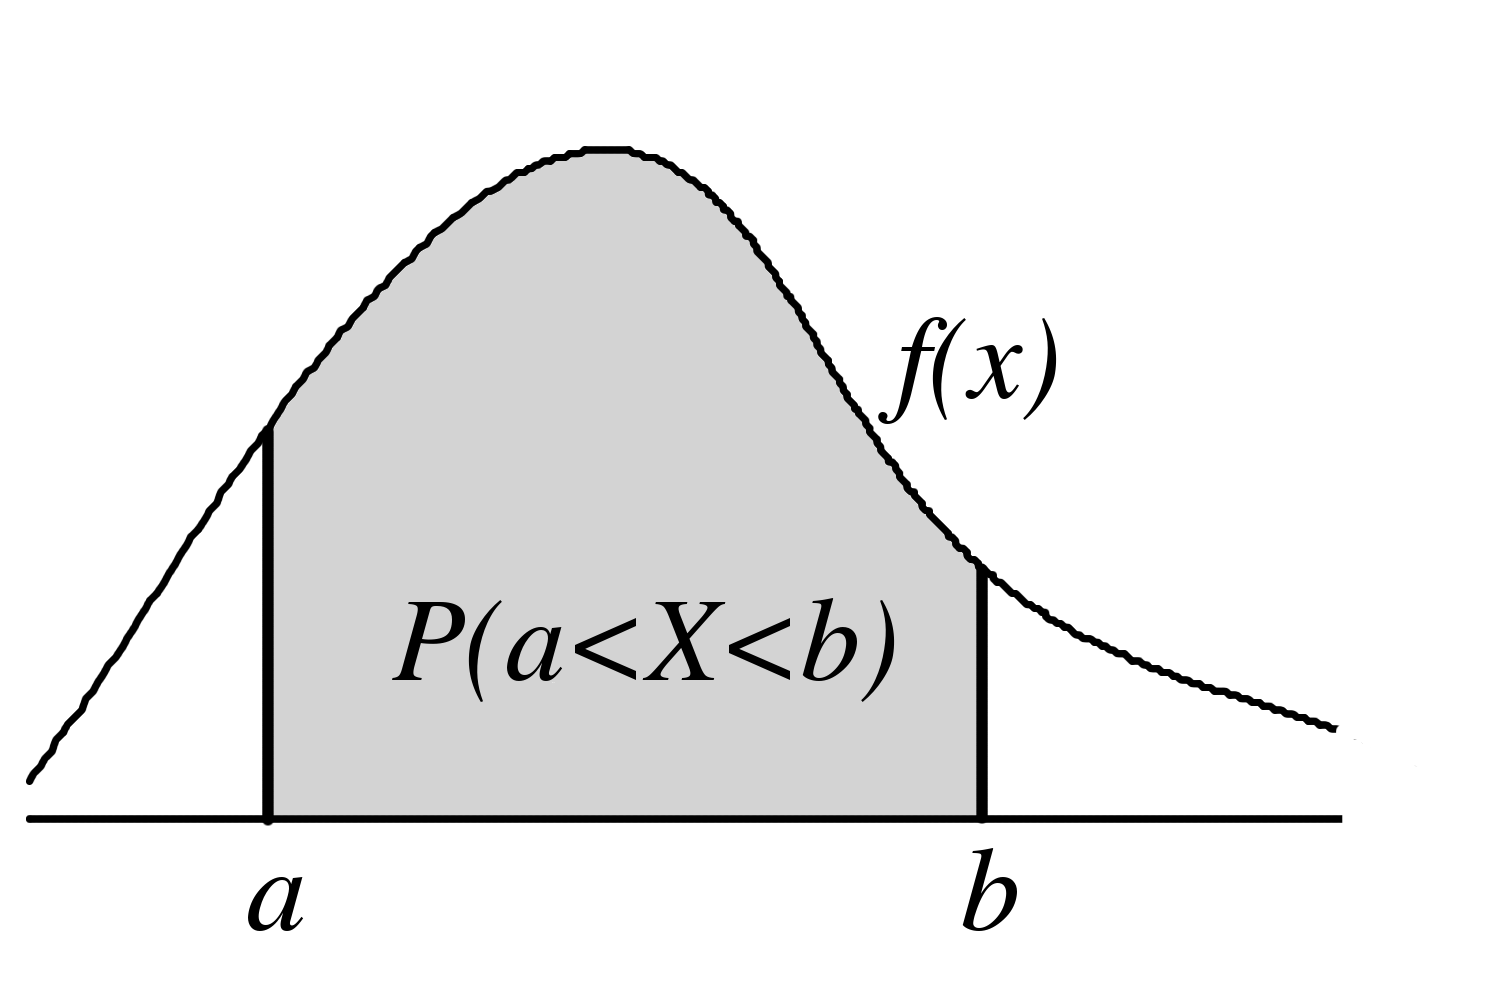 2.3 Jatkuvan satunnaismuuttujan jakauma Satunnaismuuttujan X, jonka otosavaruus Ω on (äärellinen tai ääretön) reaalilukuväli tai välien yhdiste, sanotaan olevan jatkuva (continuous) tai jatkuvasti